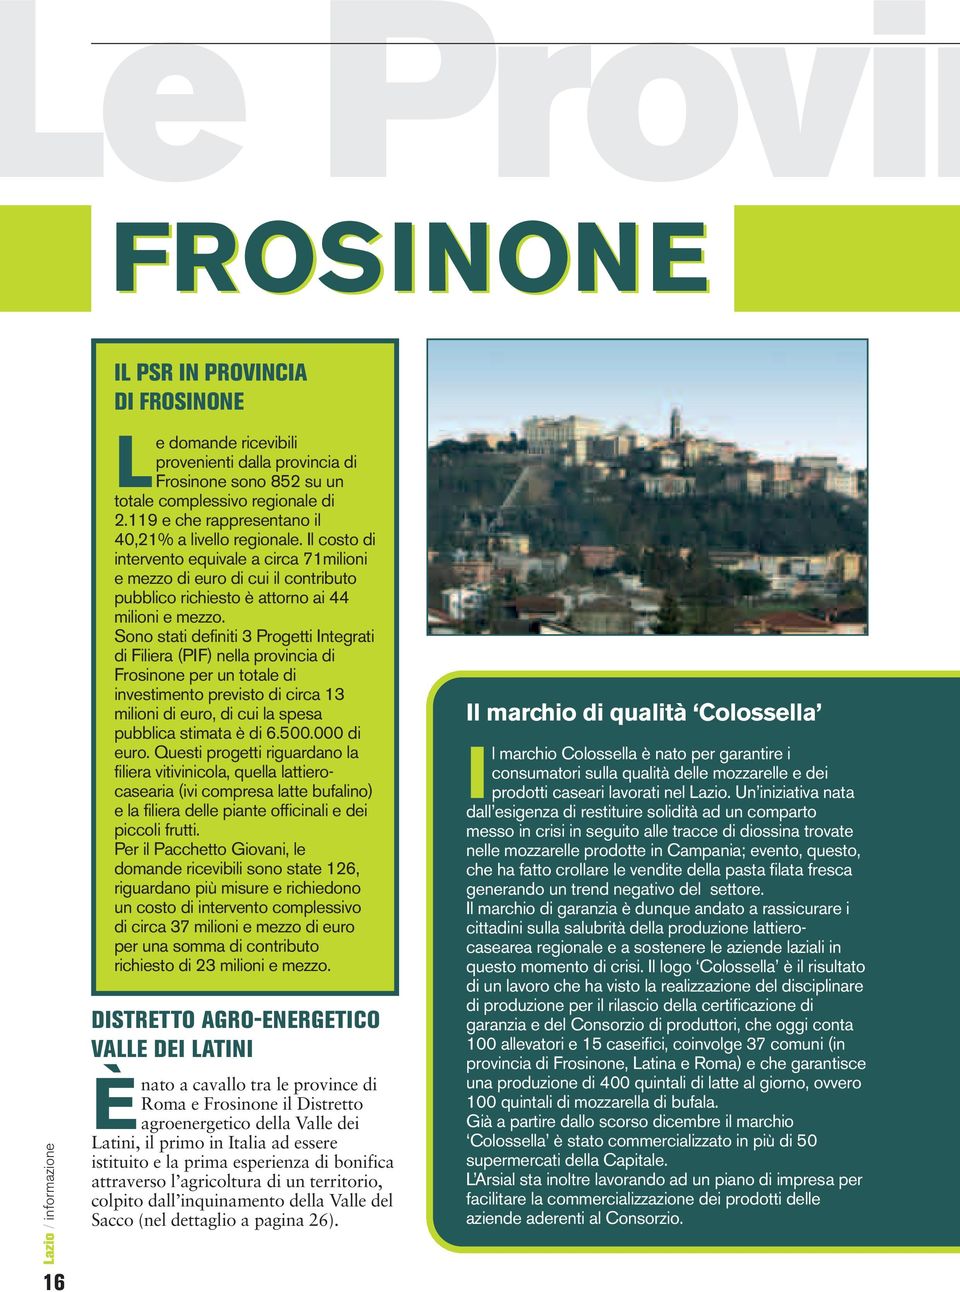 Sono stati definiti 3 Progetti Integrati di Filiera (PIF) nella provincia di Frosinone per un totale di investimento previsto di circa 13 milioni di euro, di cui la spesa pubblica stimata è di 6.500.